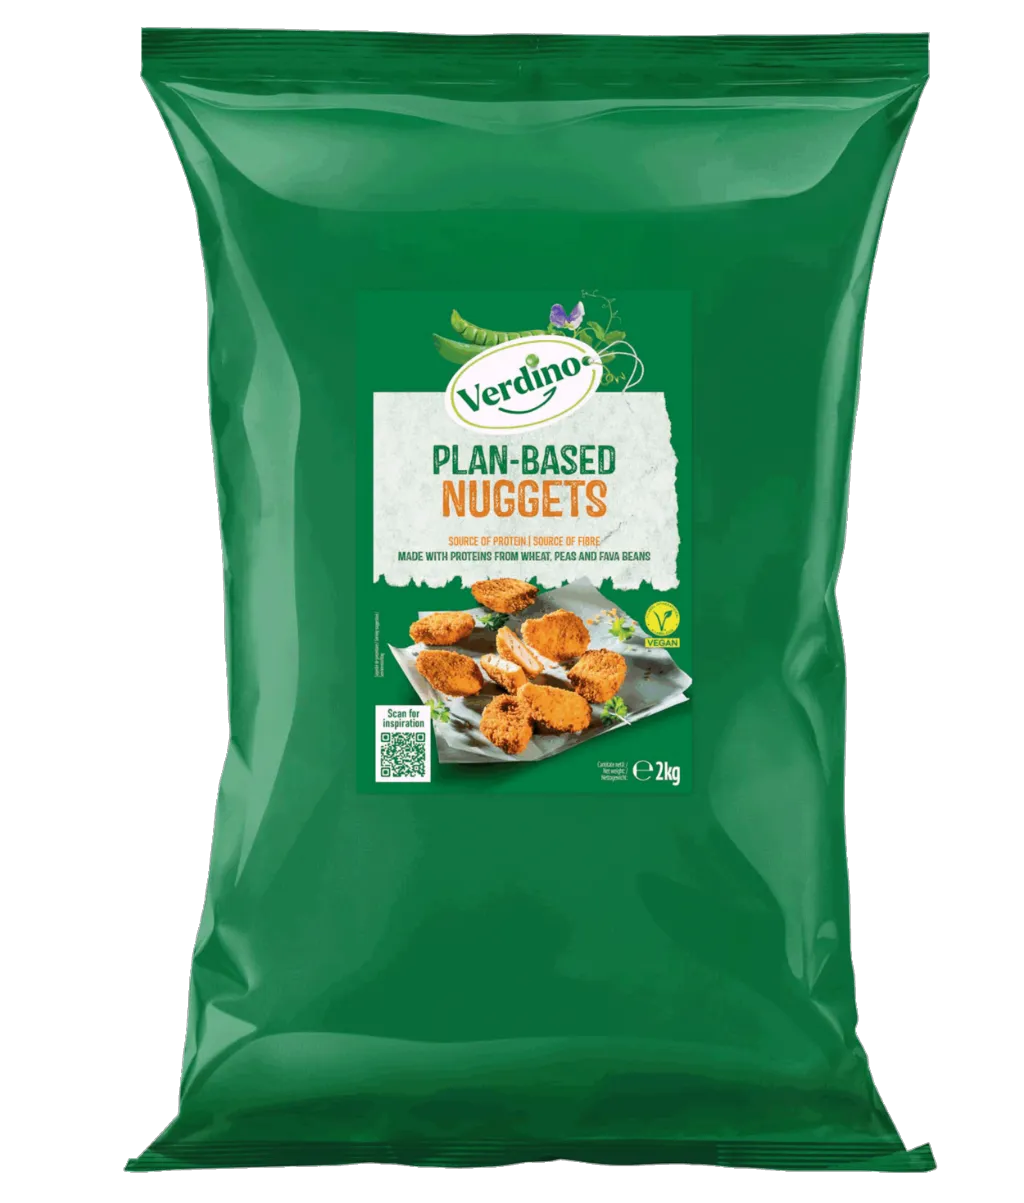 Verdino Green Food Nuggets in grüner Verpackung